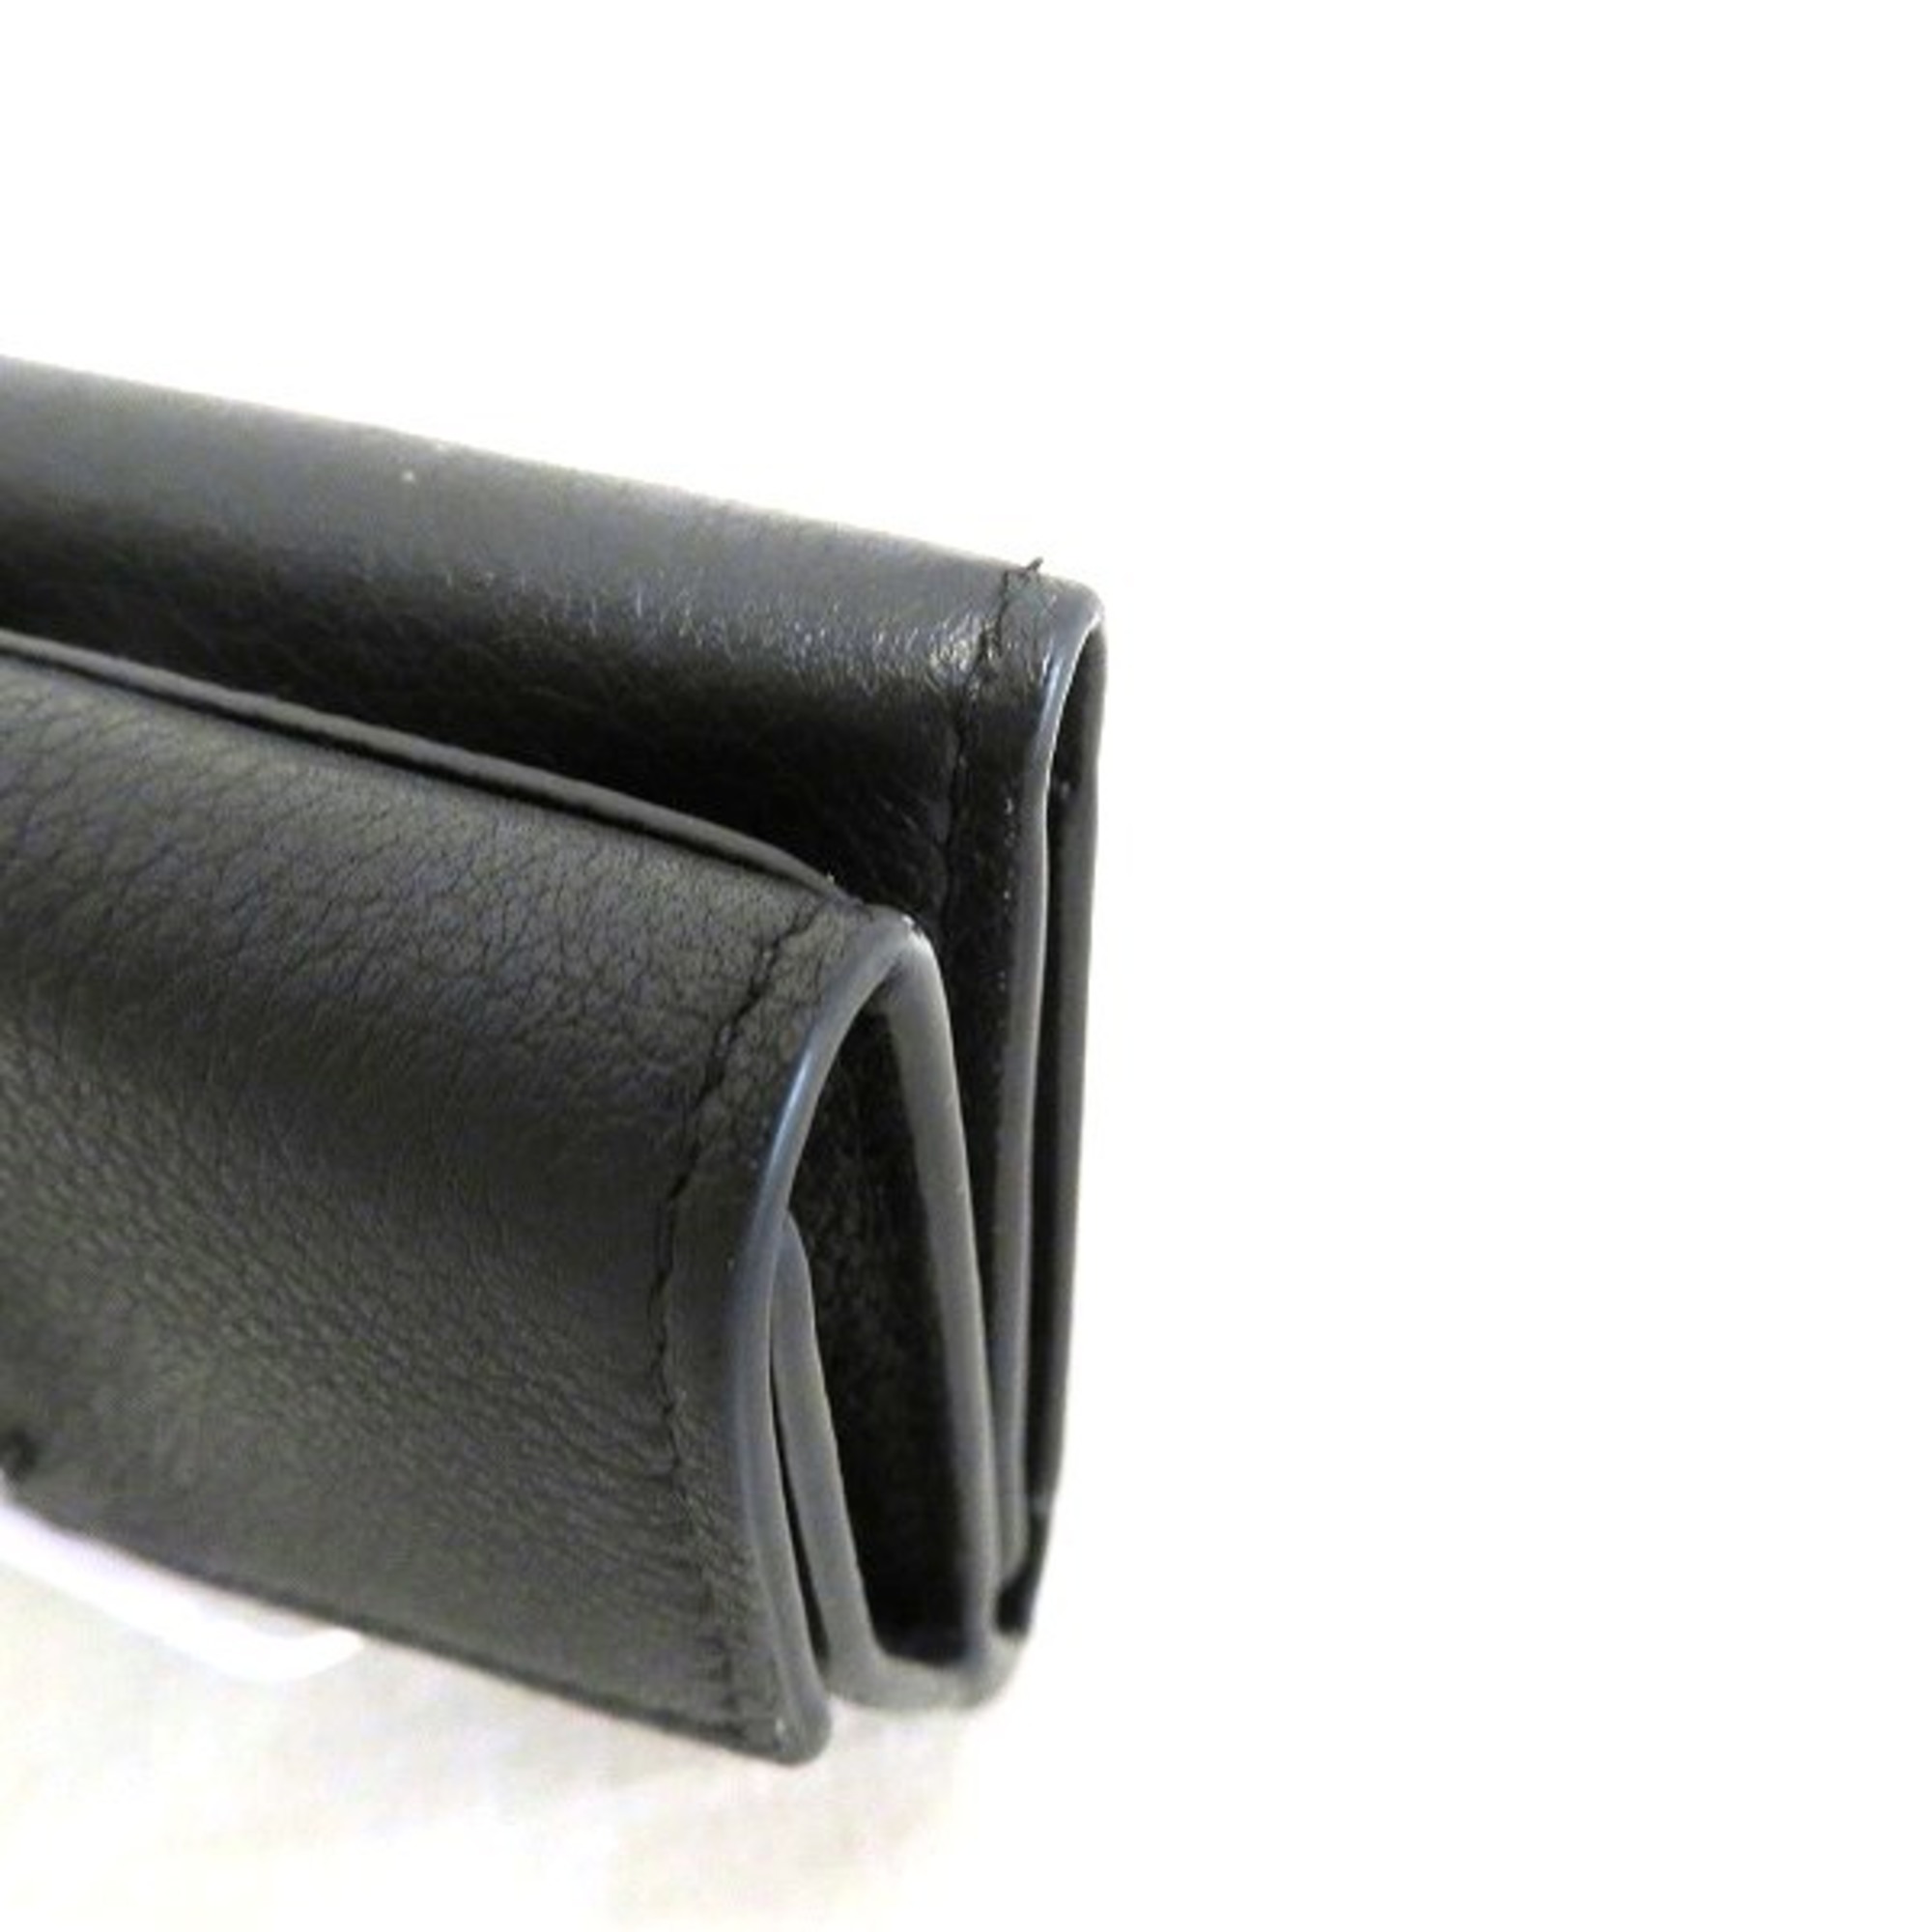 Louis Vuitton Portefeuille Rock Mini M62369 Black Wallet Trifold Unisex